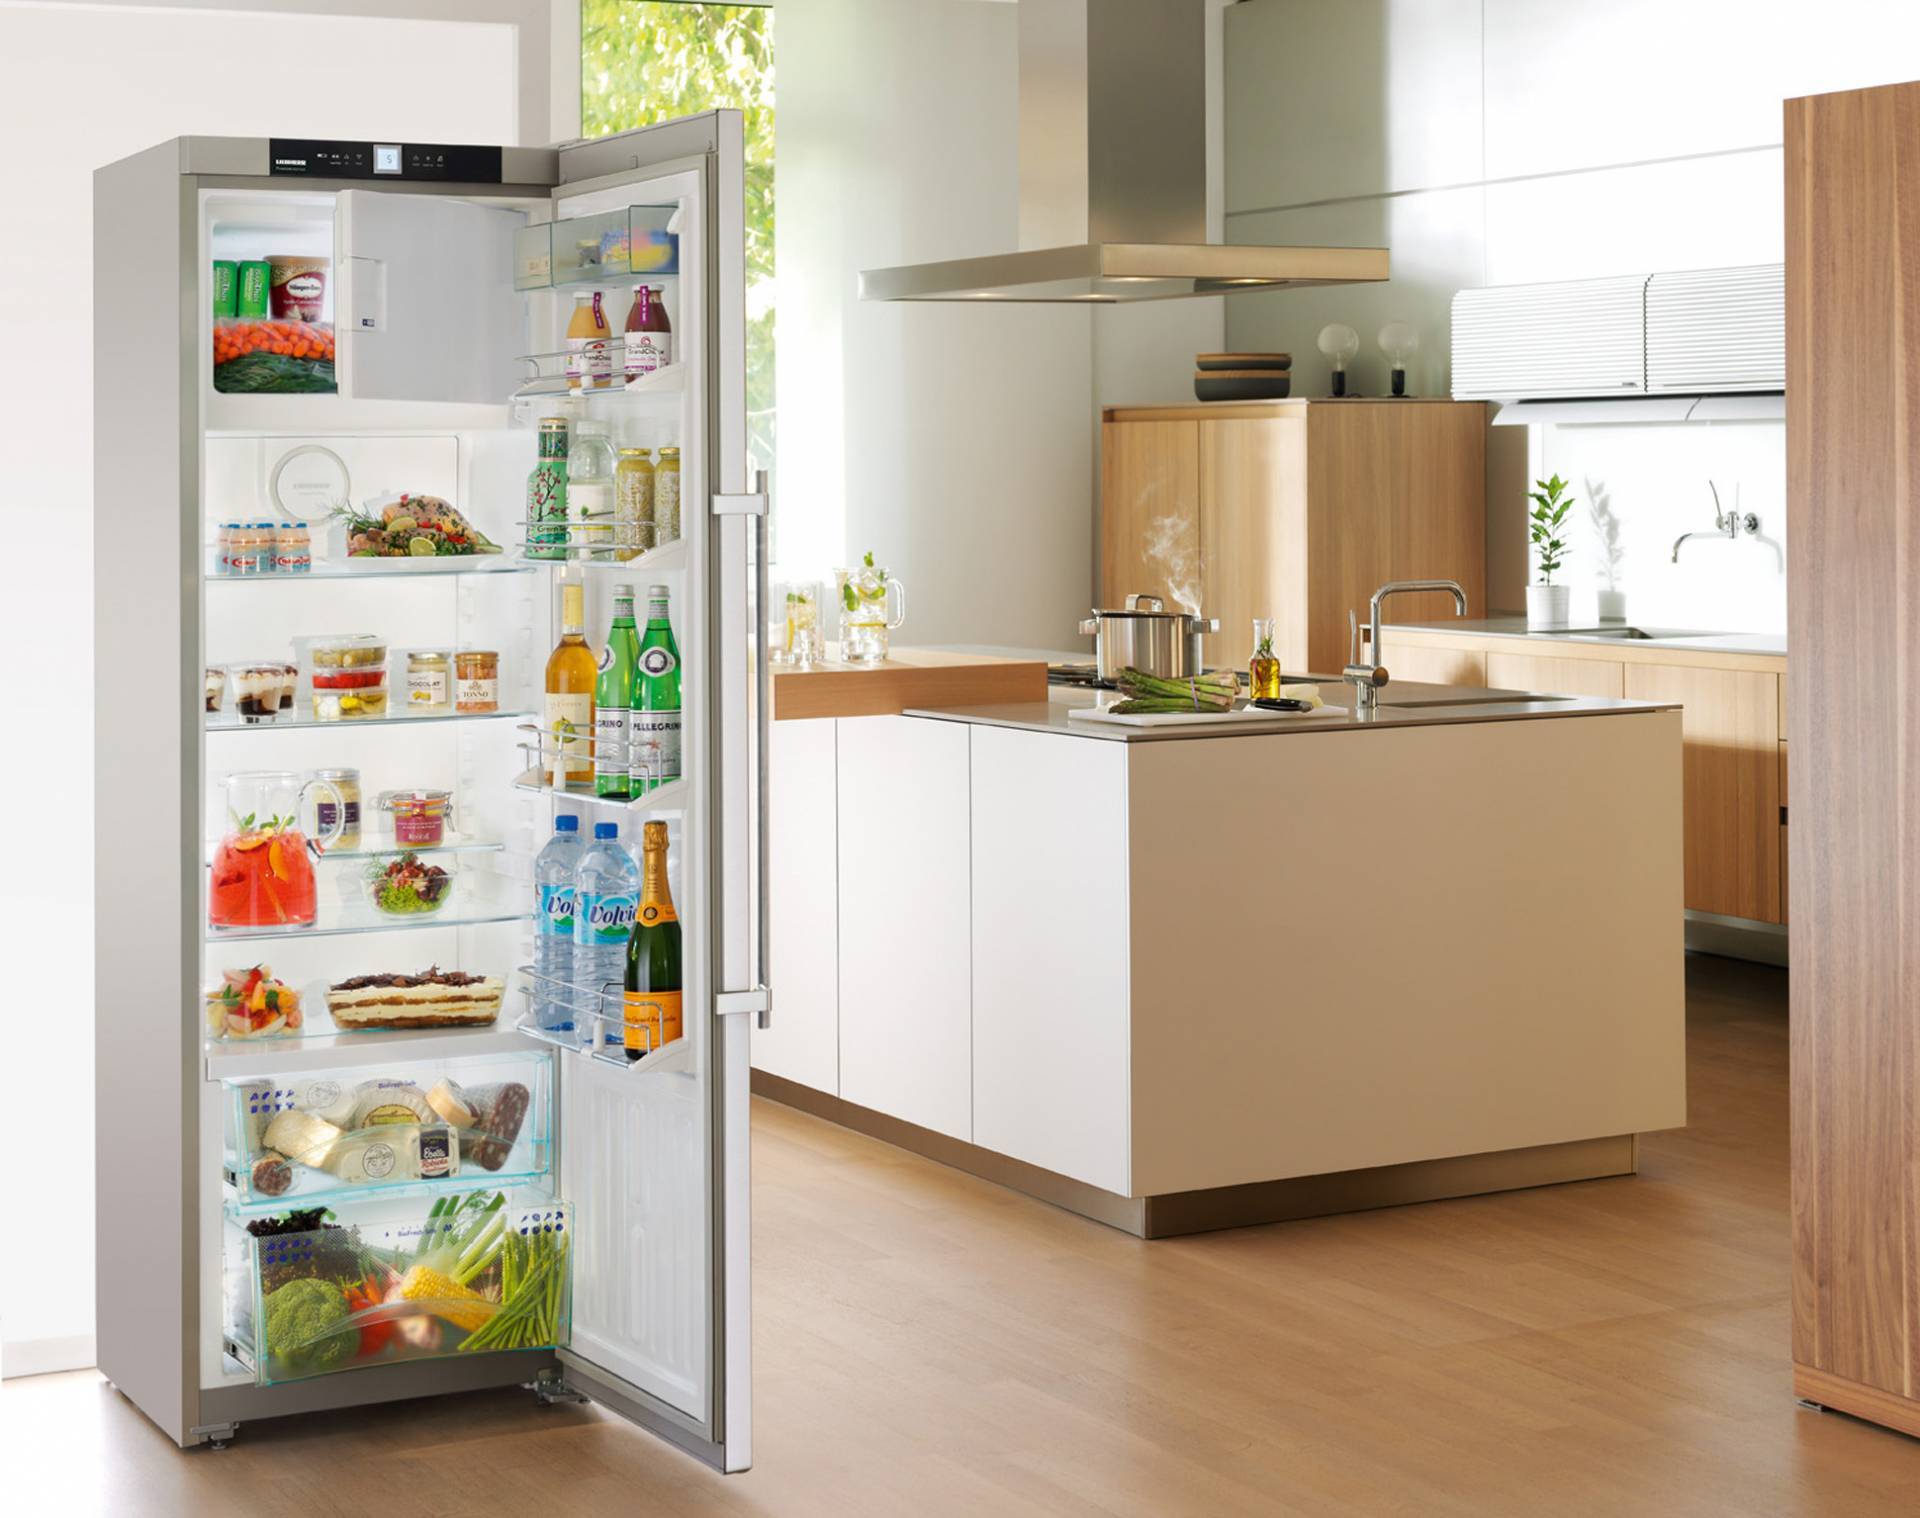 Фирмы производителей холодильников. Холодильник. Бытовые холодильники. Красивый холодильник. Холодильник качественный и недорогой.